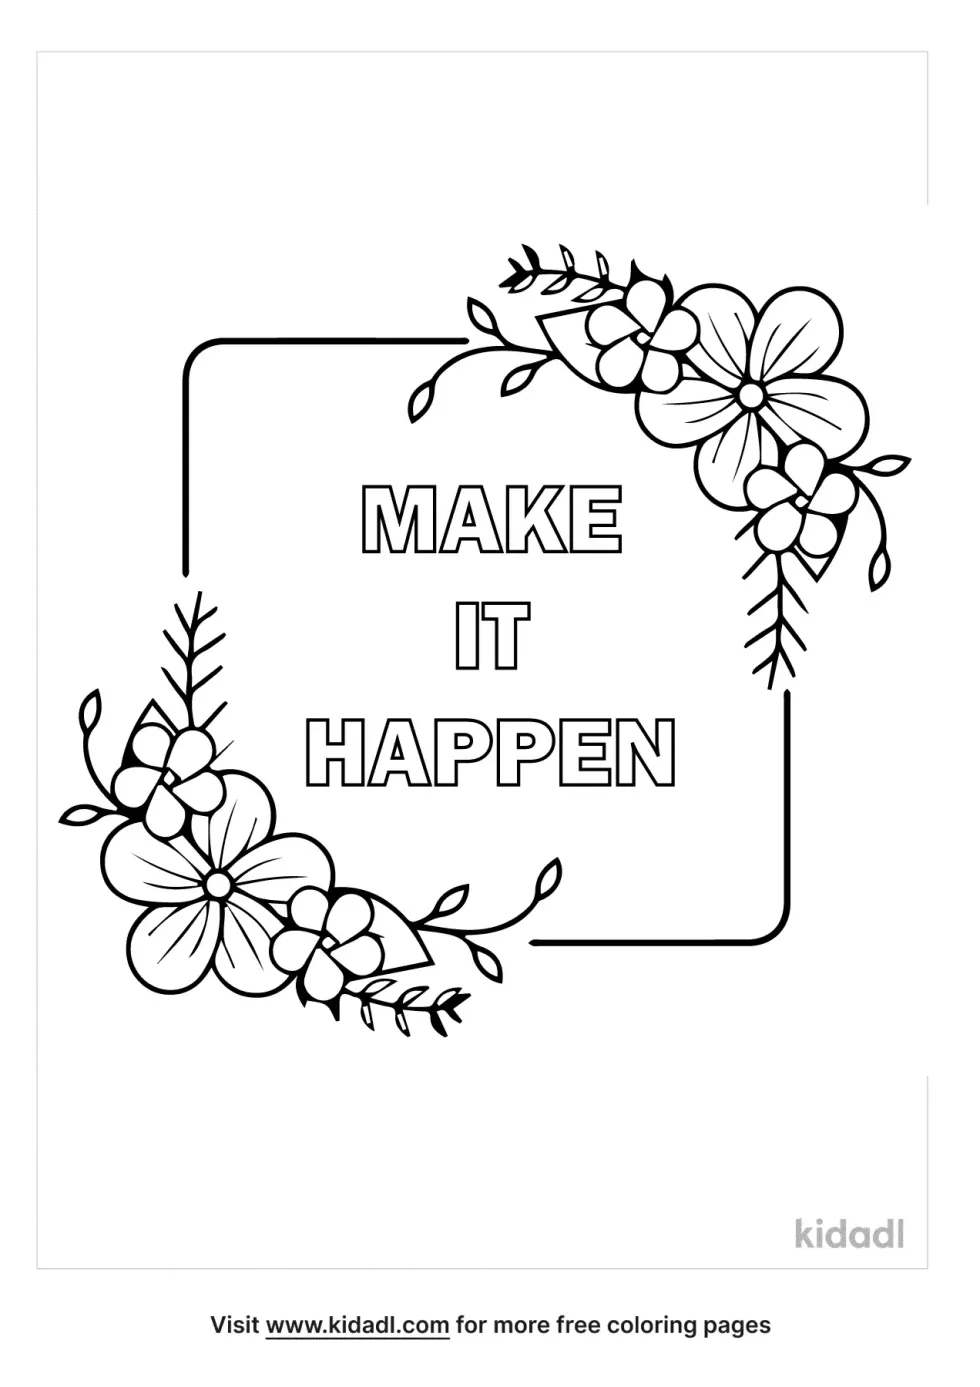 Make It Happen Coloring Page